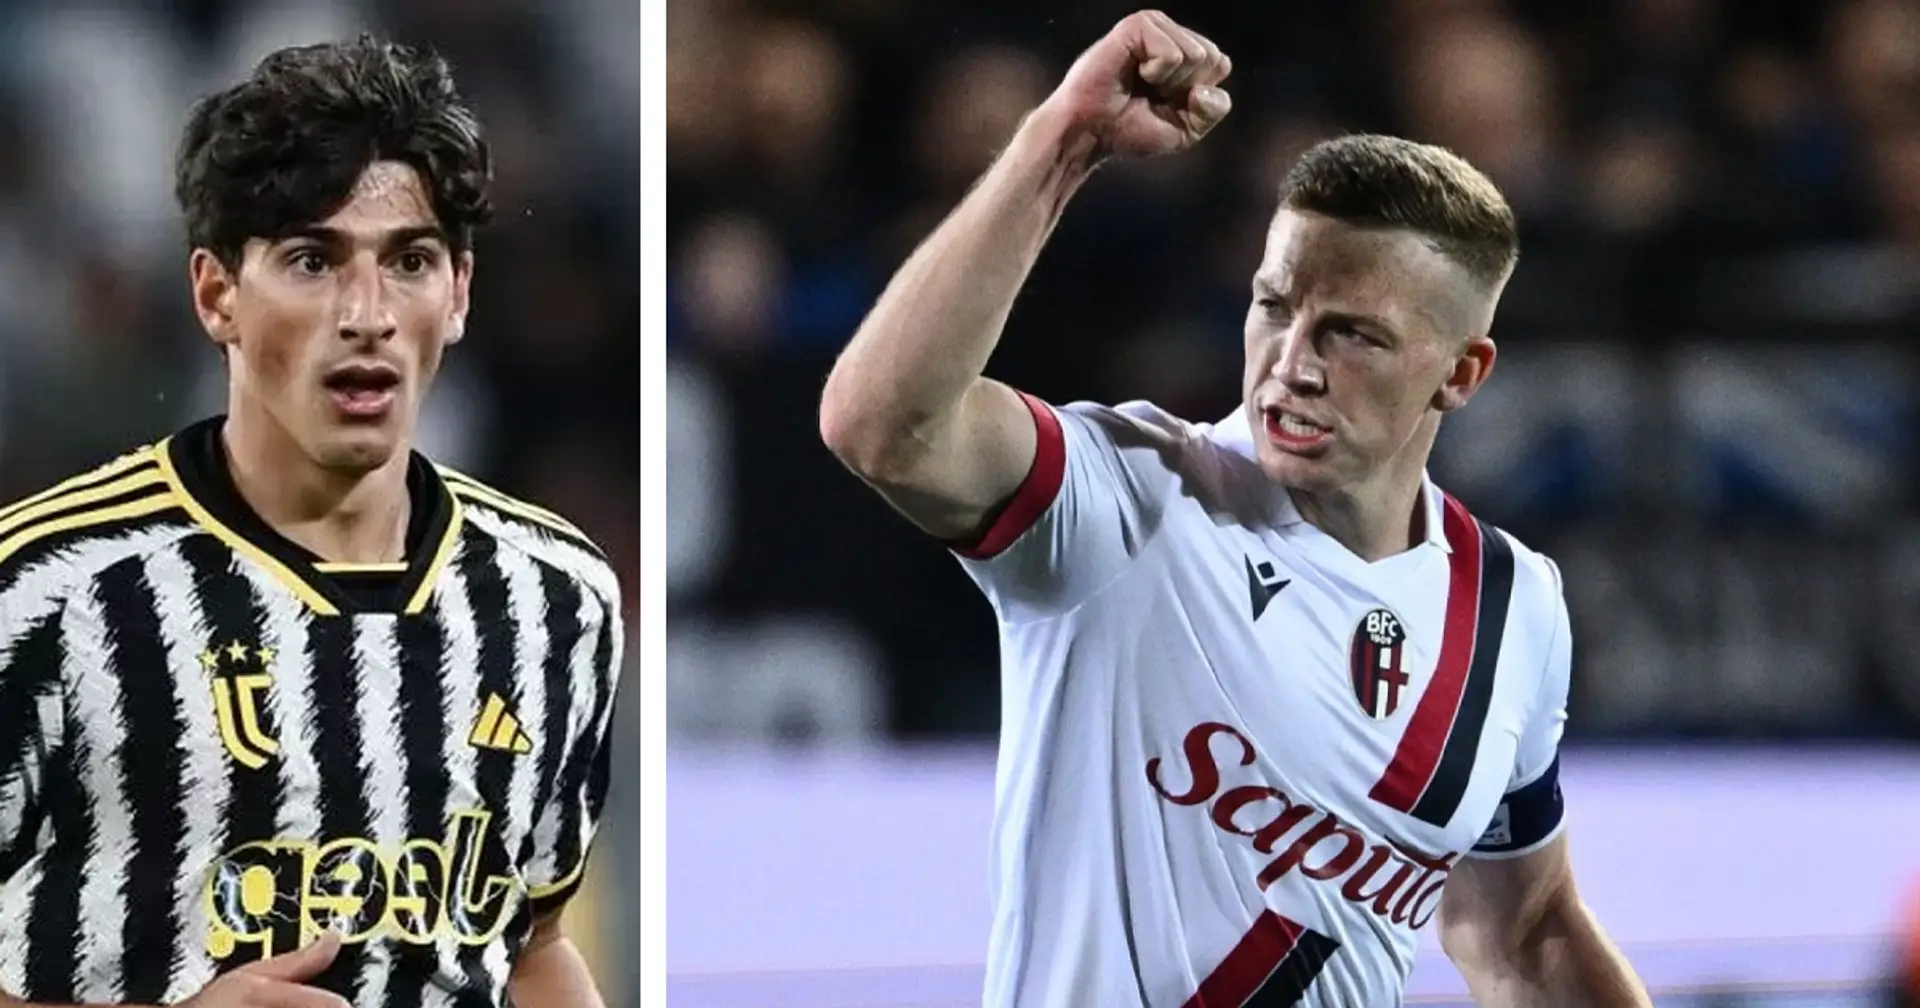 La Juventus ha un piano per strappare Ferguson al Bologna: la chiave è un giovane in prestito al Pisa